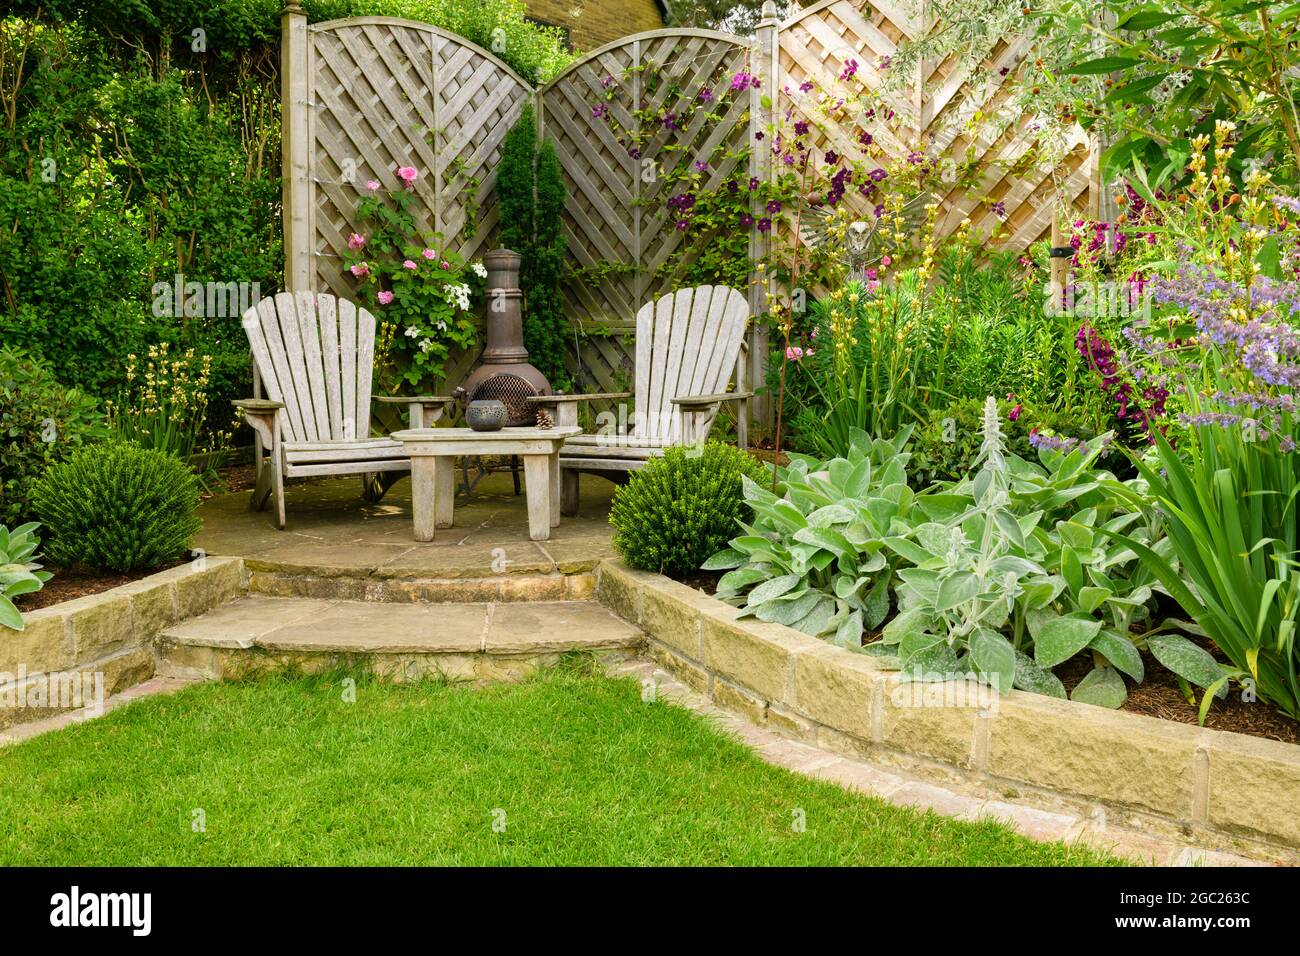 Schöner, farbenprächtiger Garten (modernes Design, geschwungene Begrenzungslinien, dekorative Chiminea, Zaun, Terrasse) - Yorkshire England Großbritannien Stockfoto